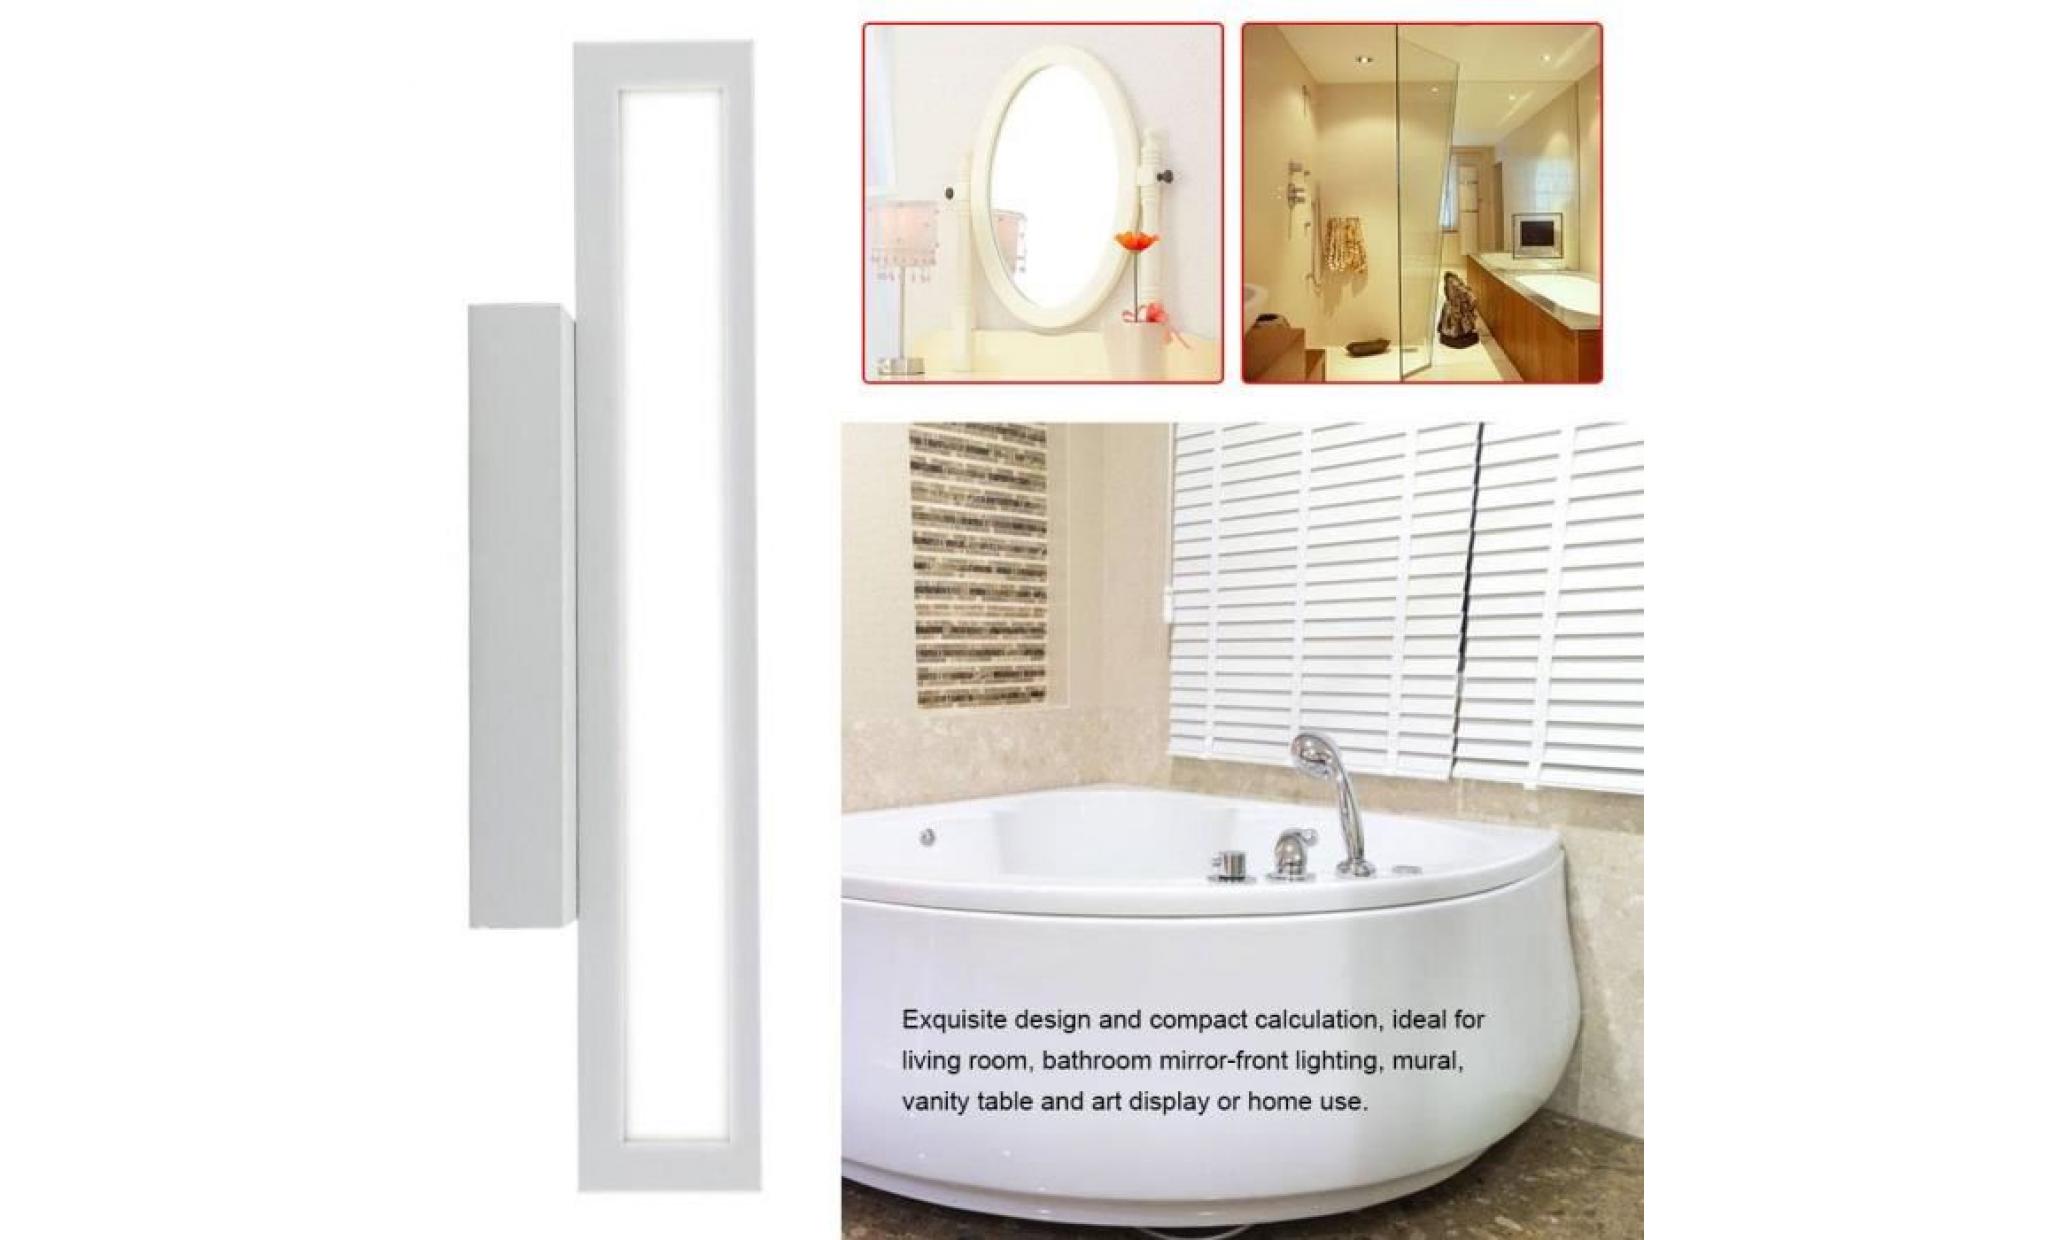 3 led lumière moderne salle de bain vanité cristal miroir avant toilette murale pas cher